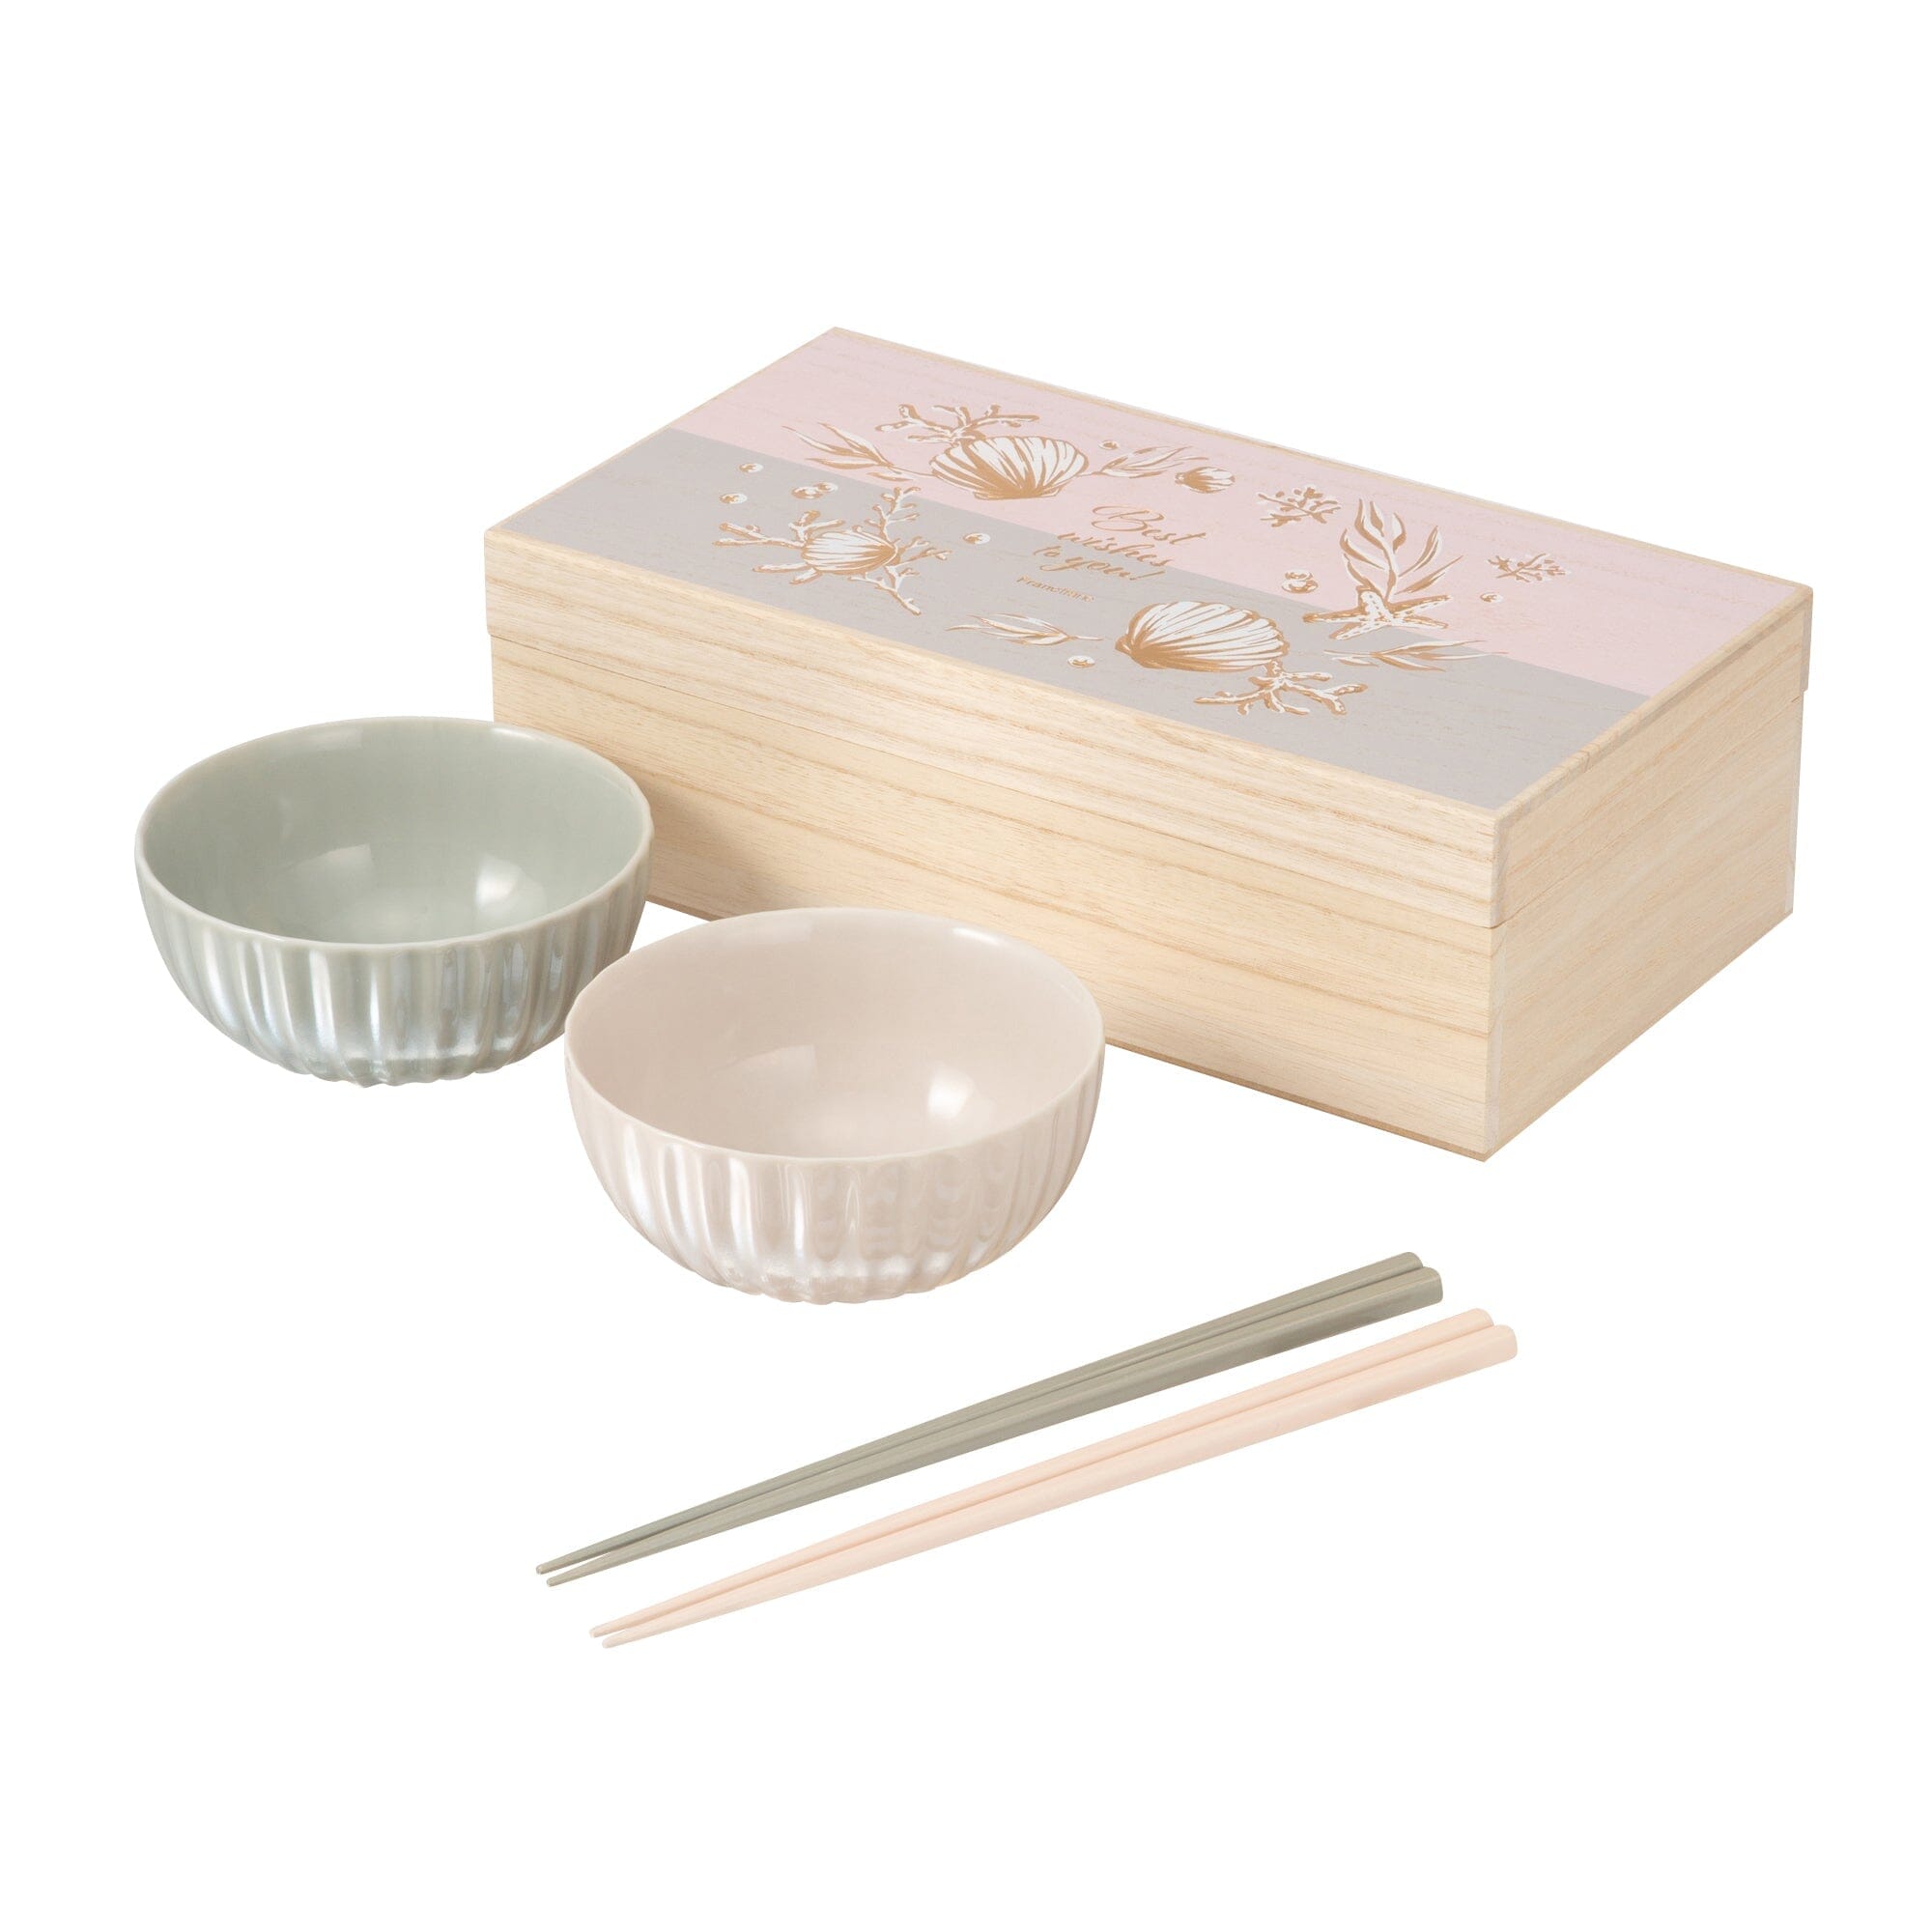 GIFT 茶碗 & 筷子 自然系列